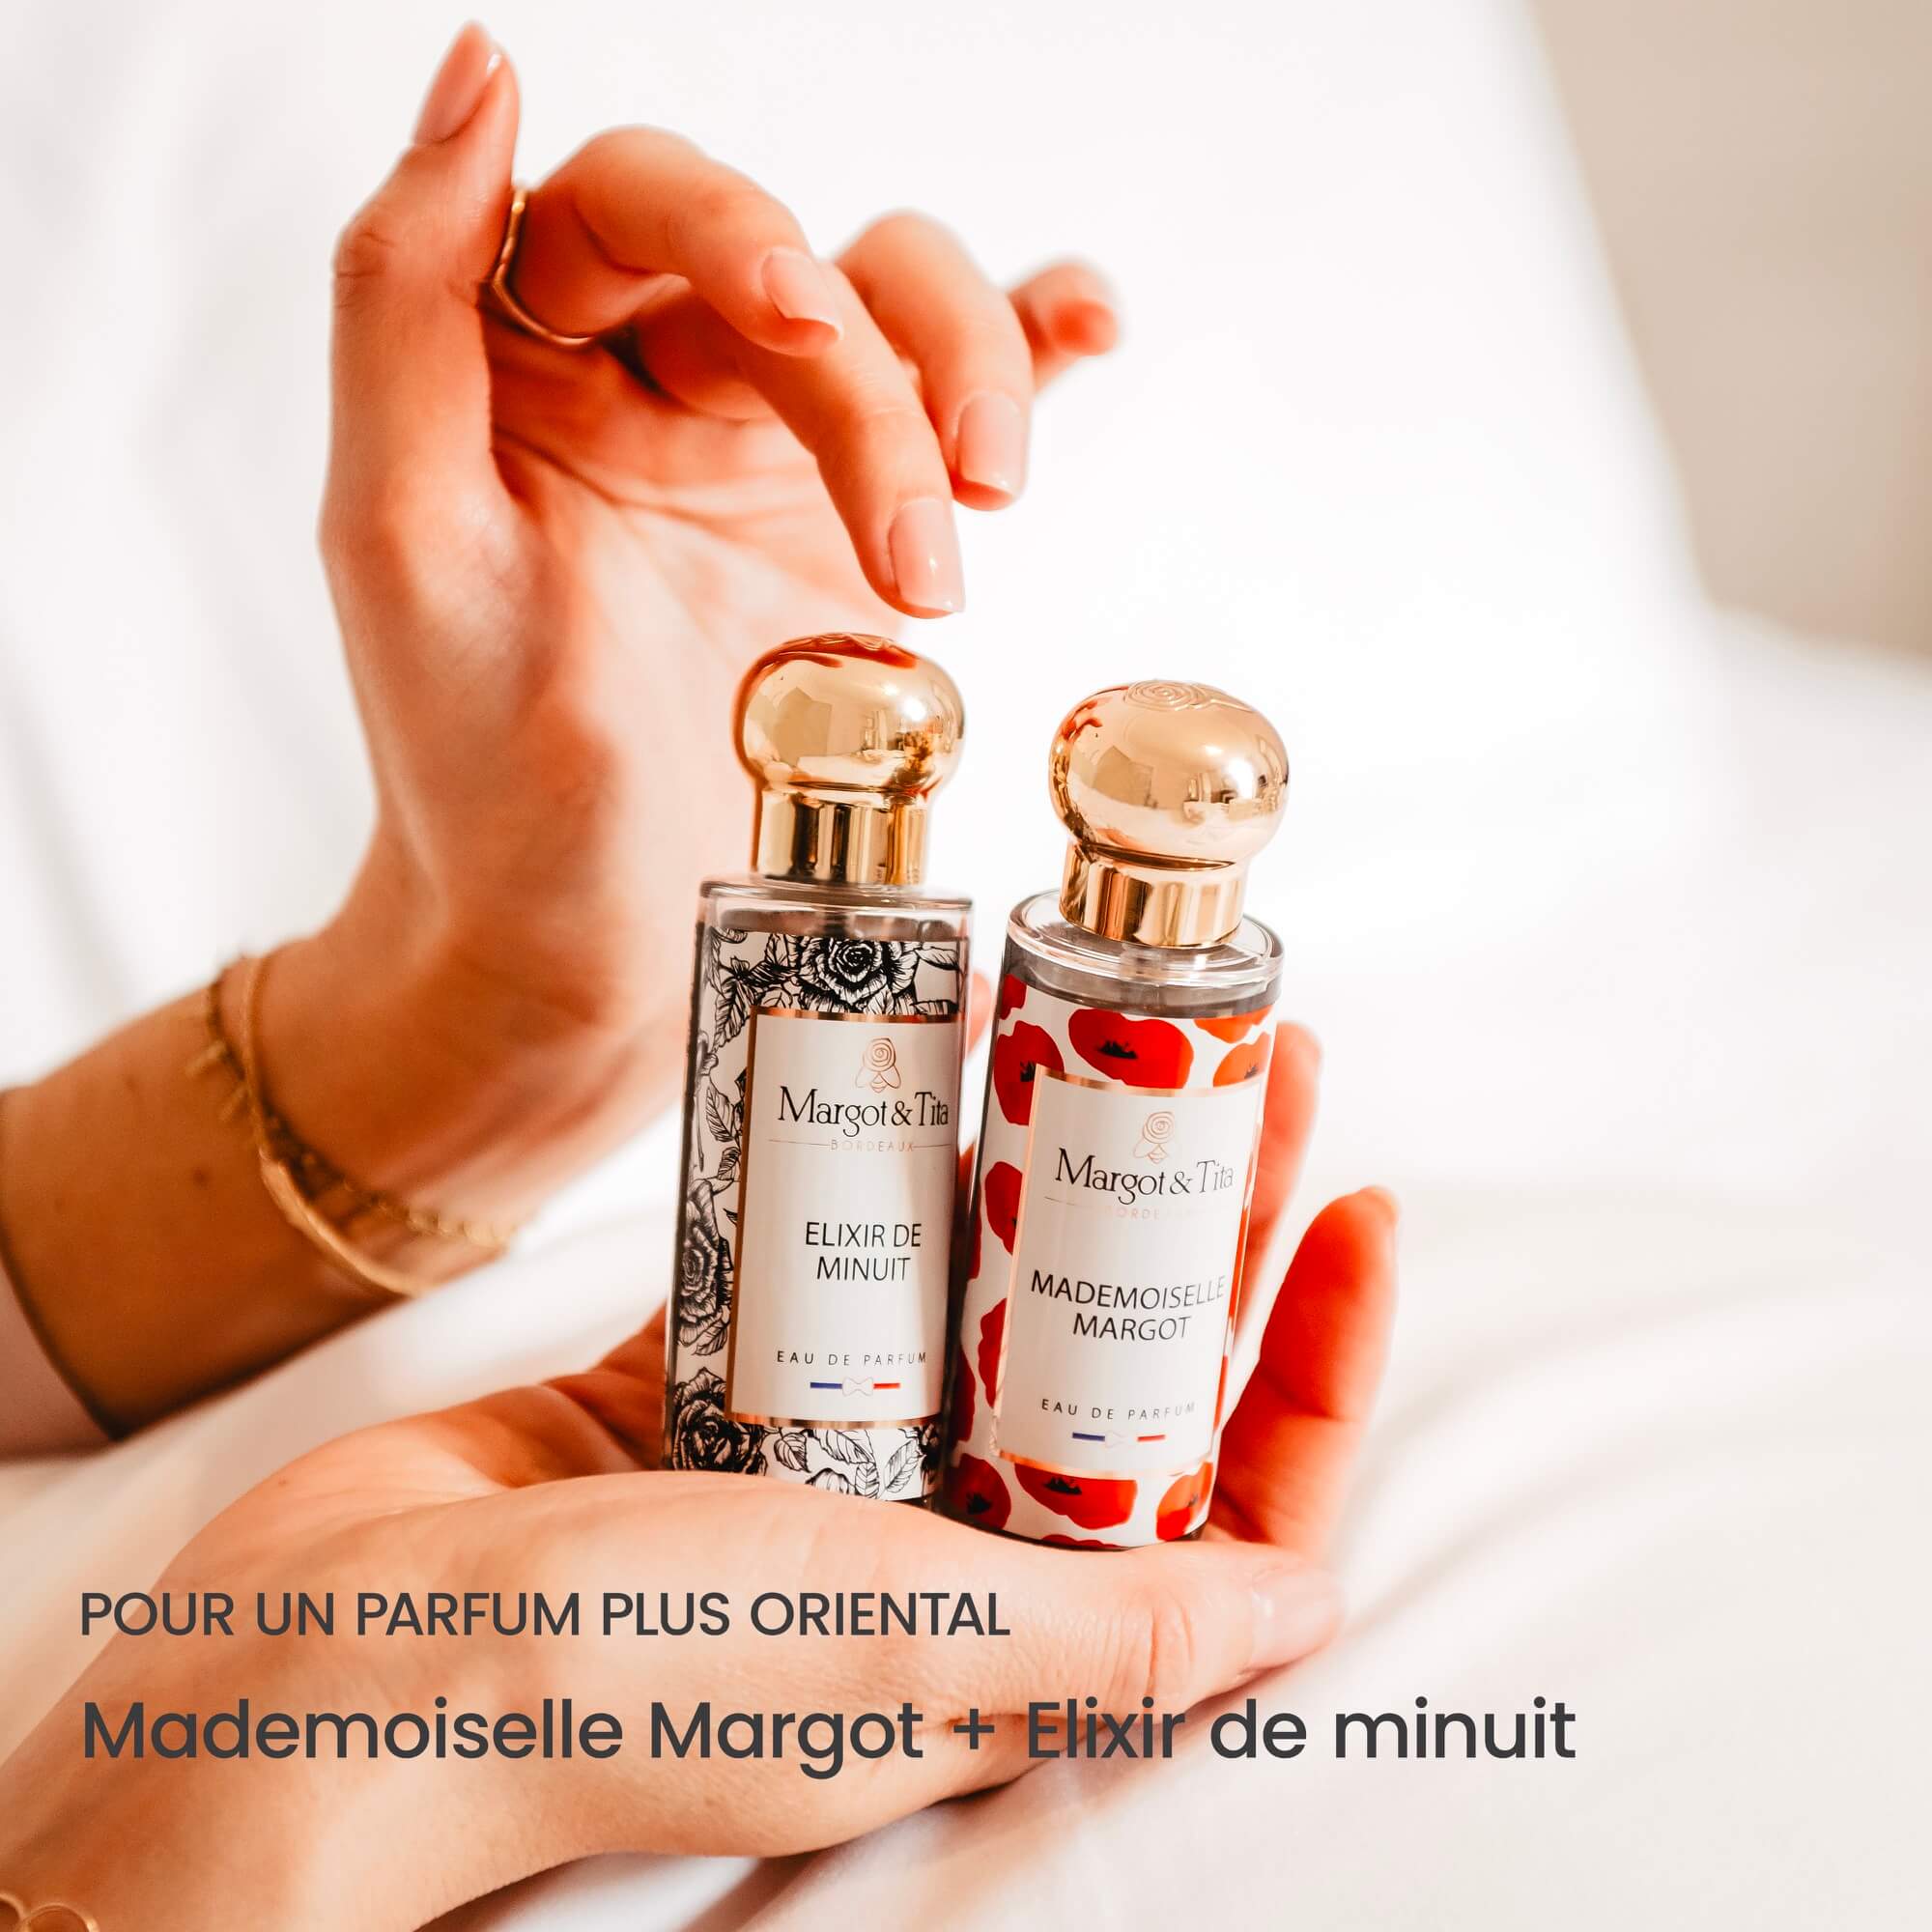 Mademoiselle Margot - Natural eau de parfum | Margotu0026Tita